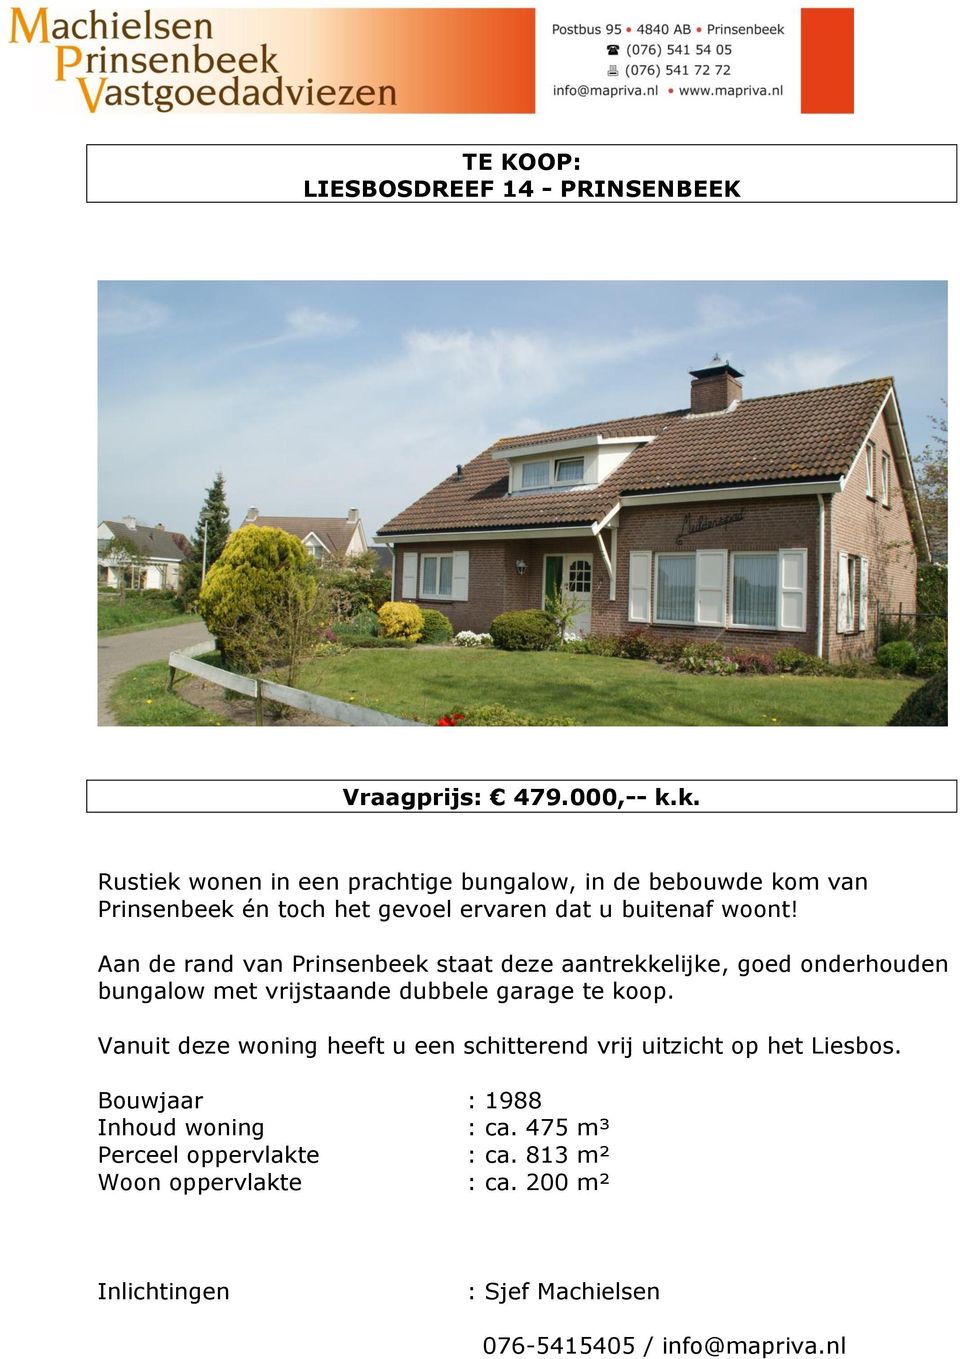 Aan de rand van Prinsenbeek staat deze aantrekkelijke, goed onderhouden bungalow met vrijstaande dubbele garage te koop.